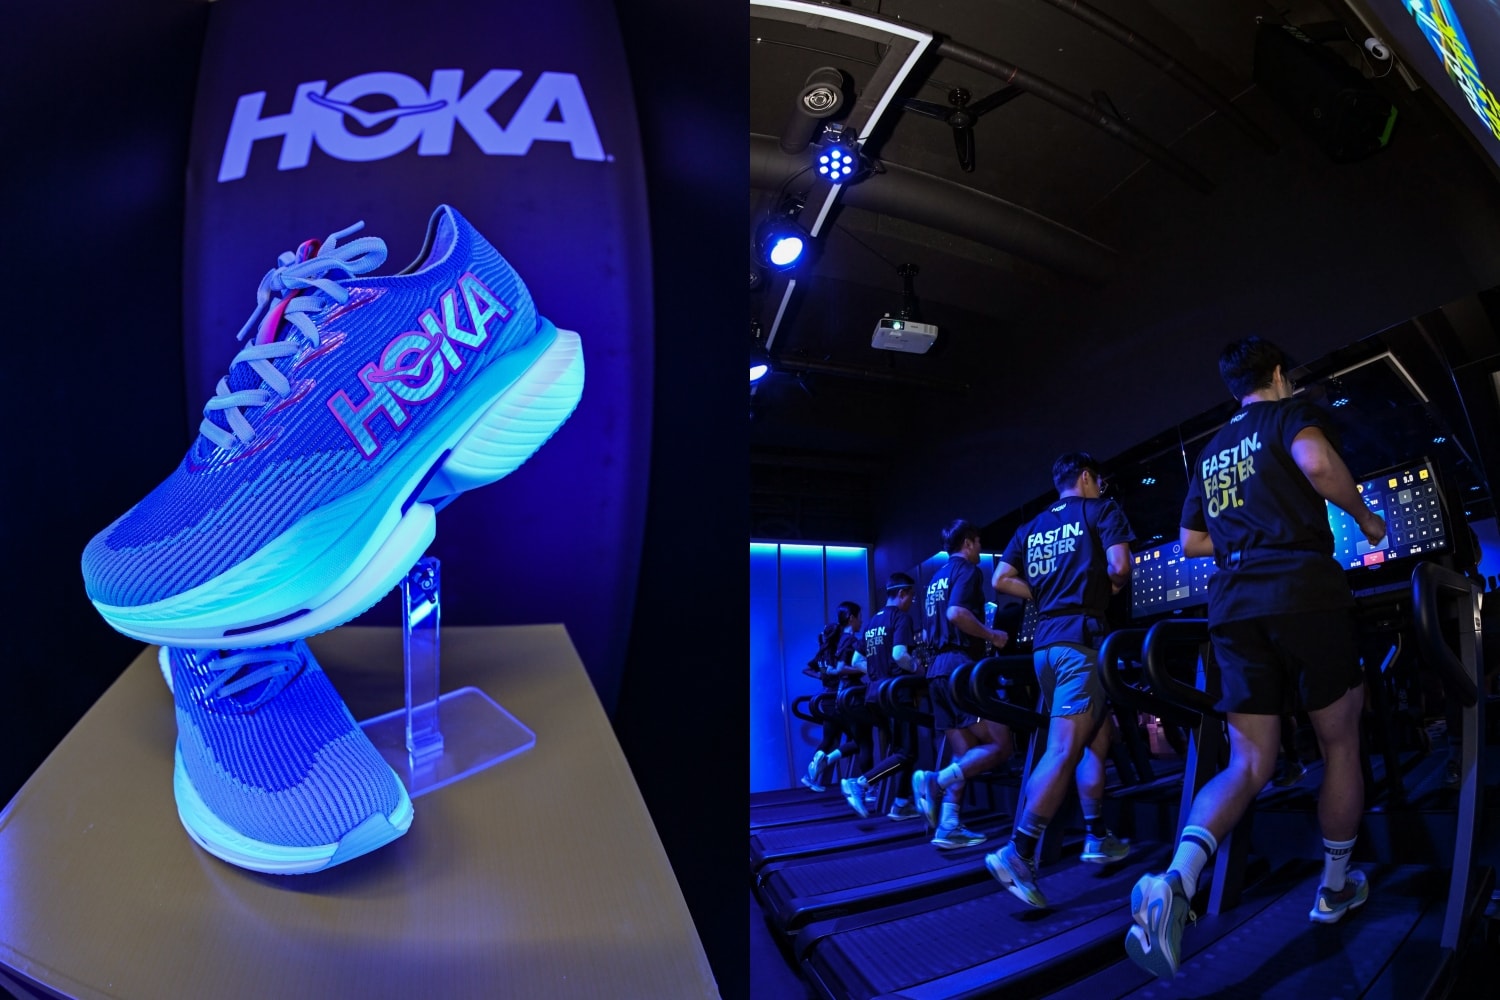 빠르고 역동적인 주행을 위한, 호카 레이싱 슈즈 ‘씨엘로 X1’ 출시 hoka racing shoes cielo x1 launching event